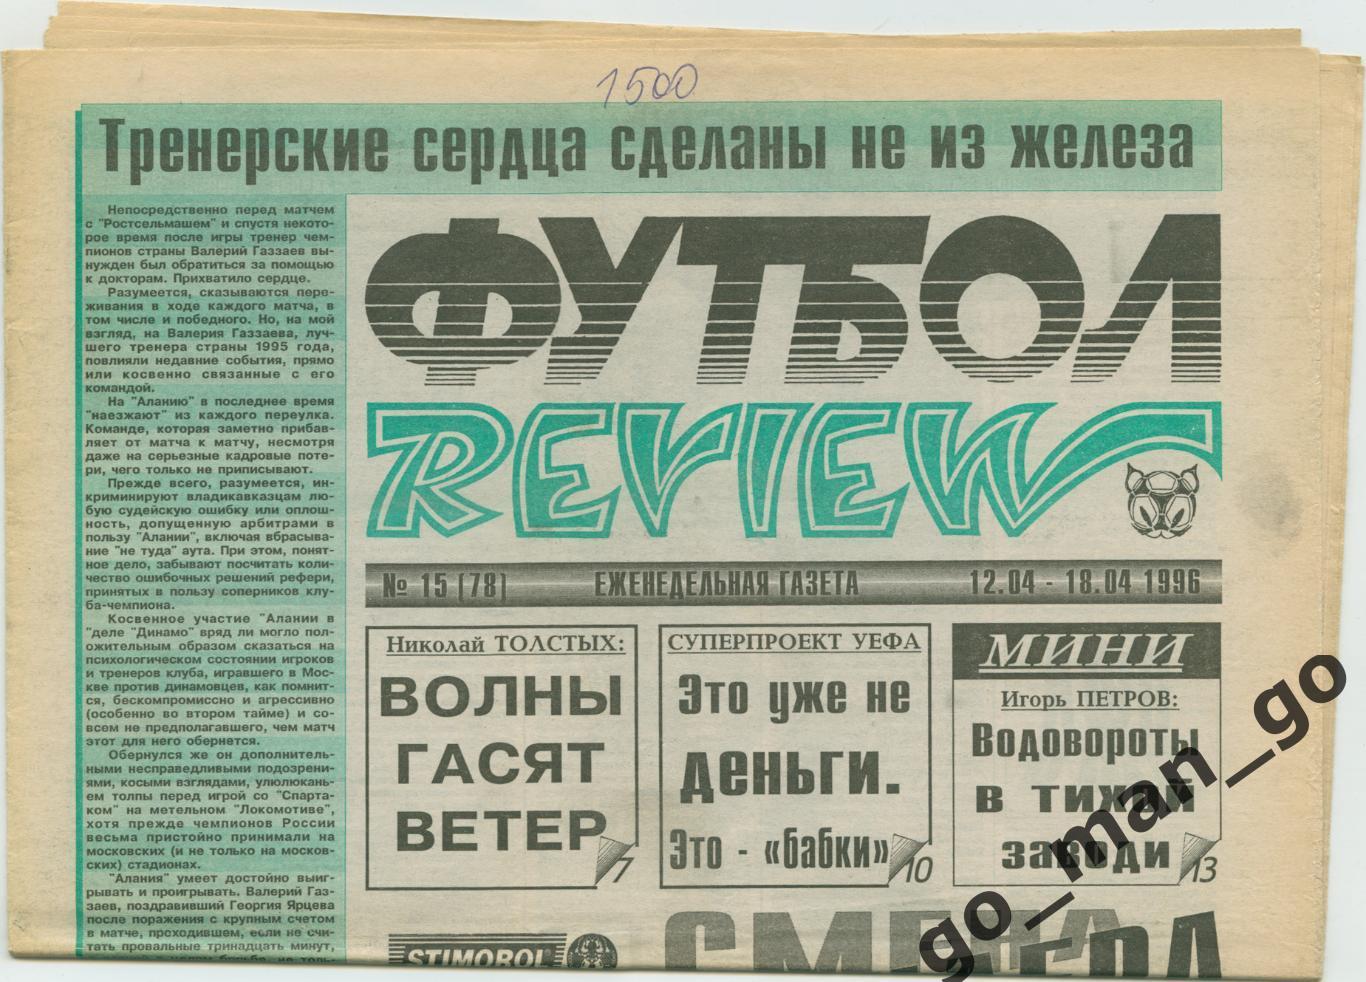 Еженедельник Футбол-Review (Футбол-Ревю), 12-18.04.1996, № 15.